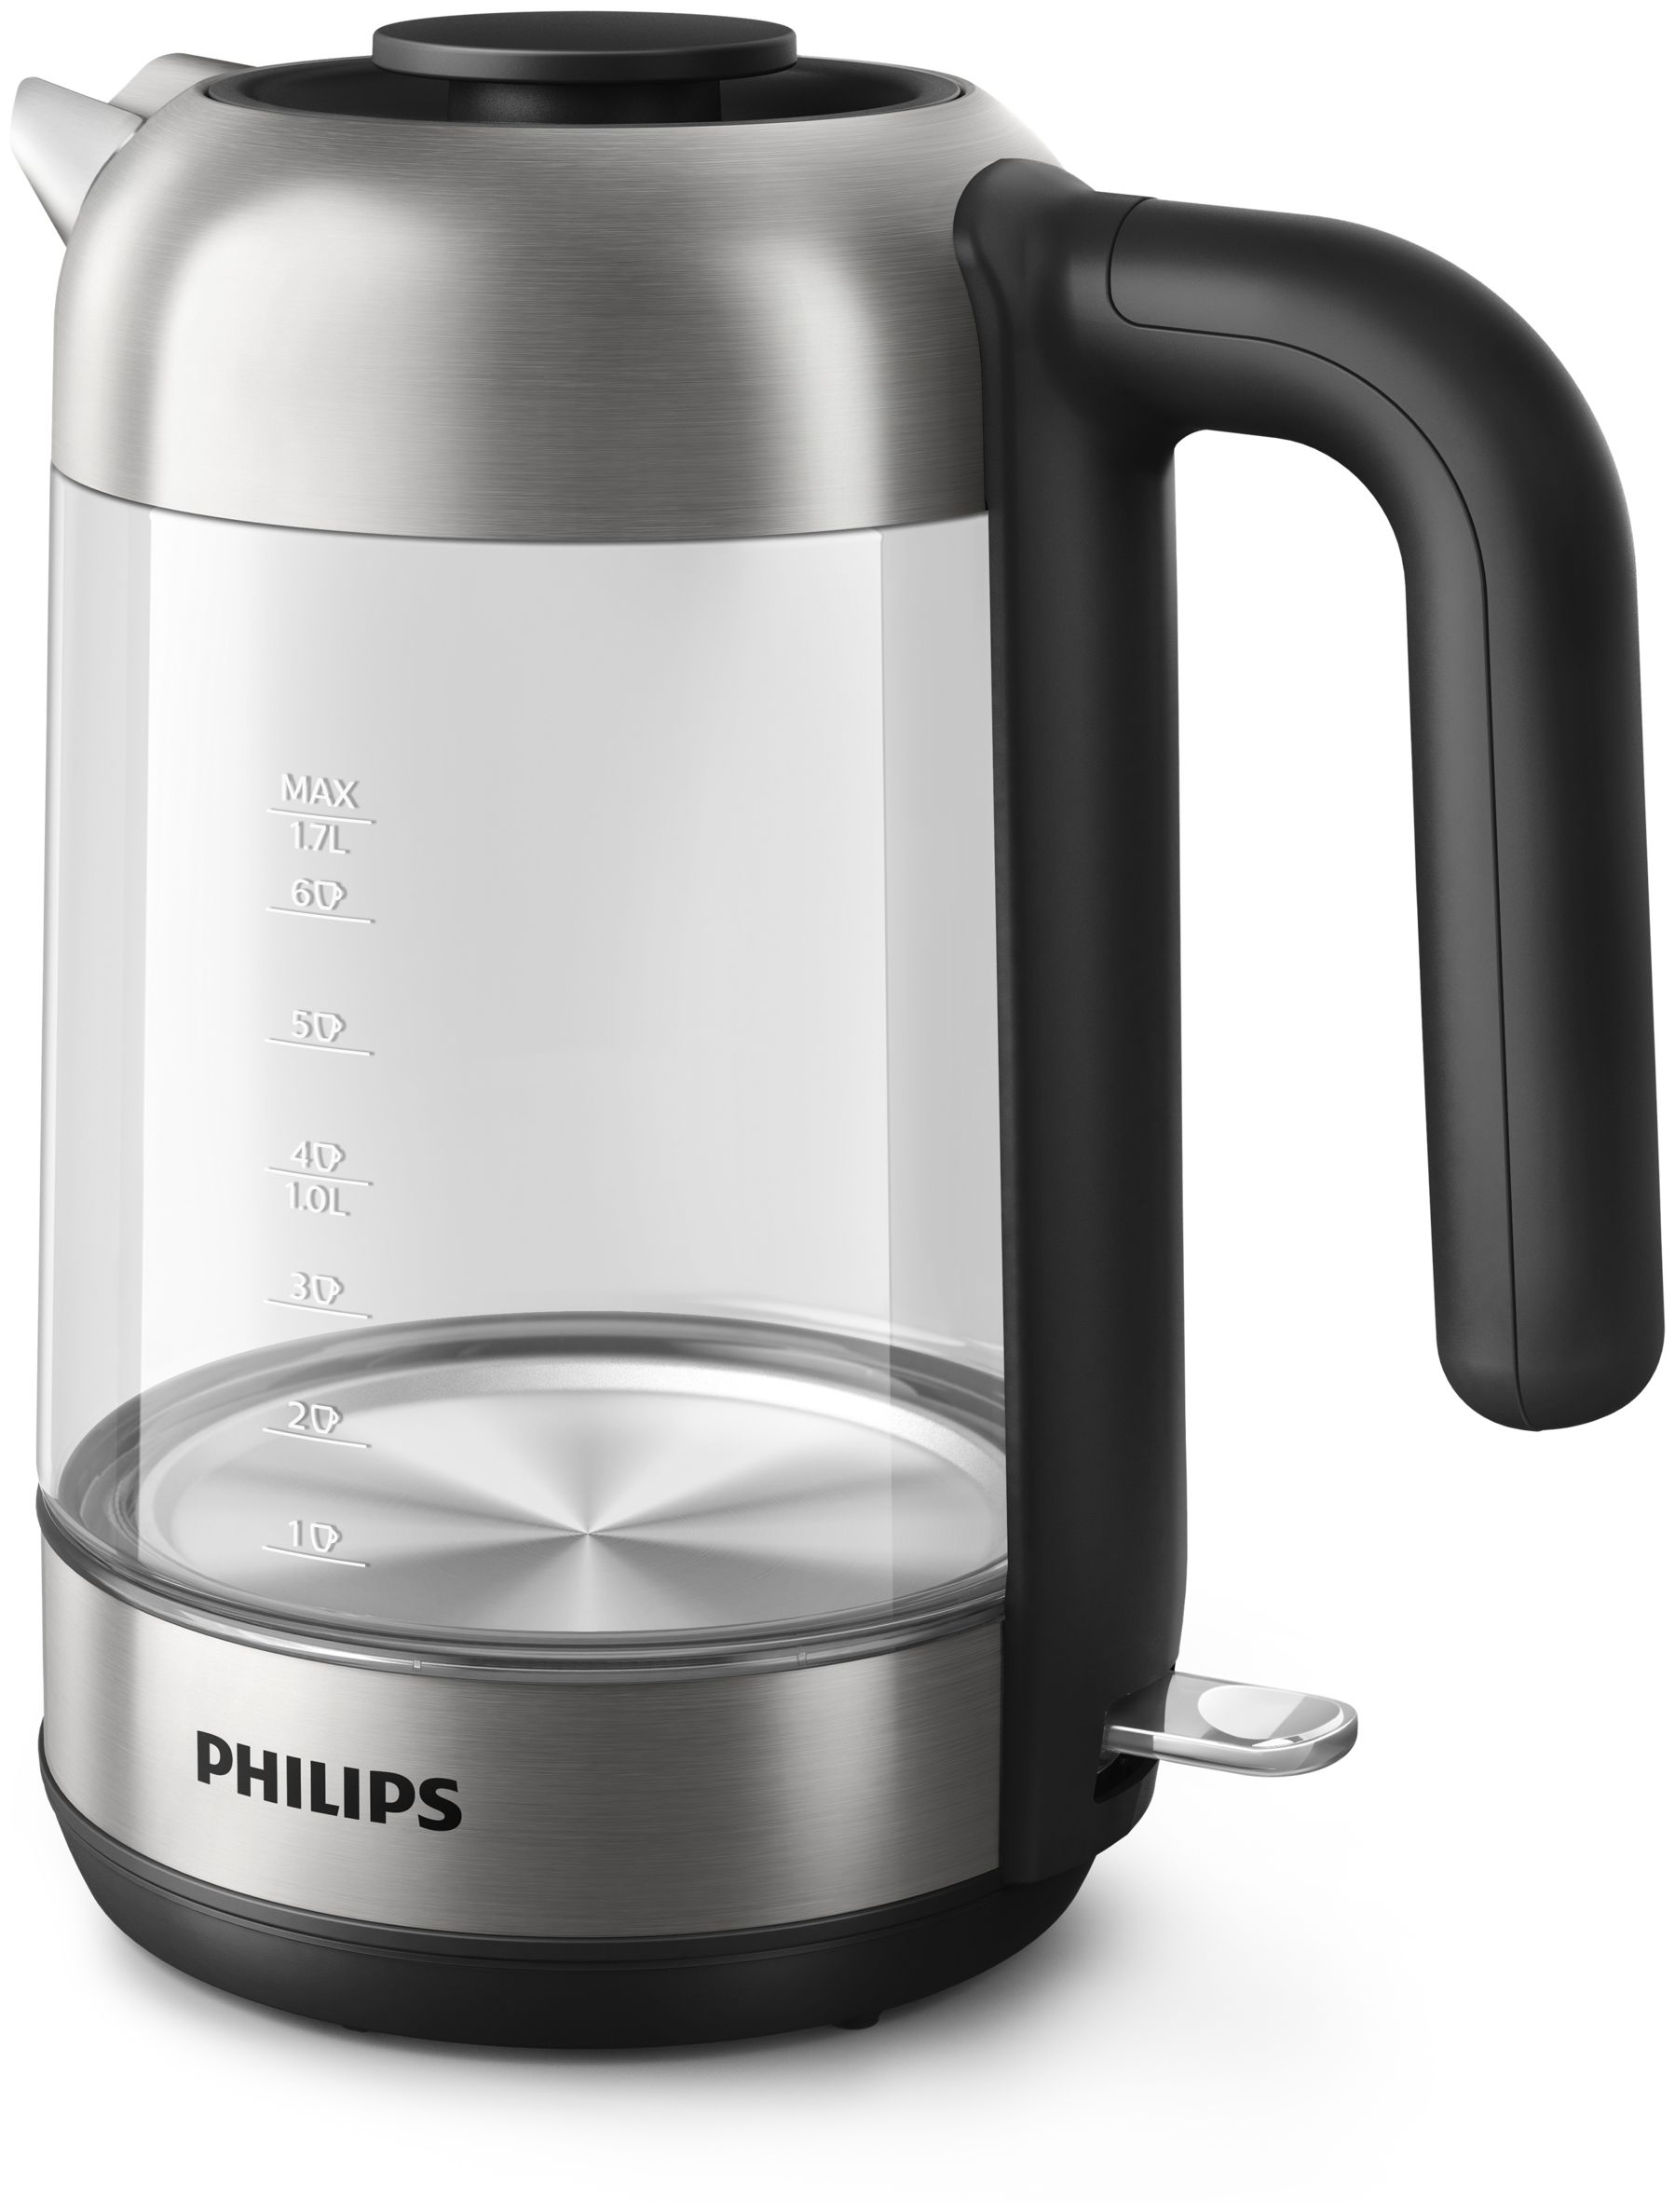 Philips HD9339/80 expert 1,7 Edelstahl, 2200 Wasserkocher Transparent) 5000 von l Technomarkt series W (Schwarz